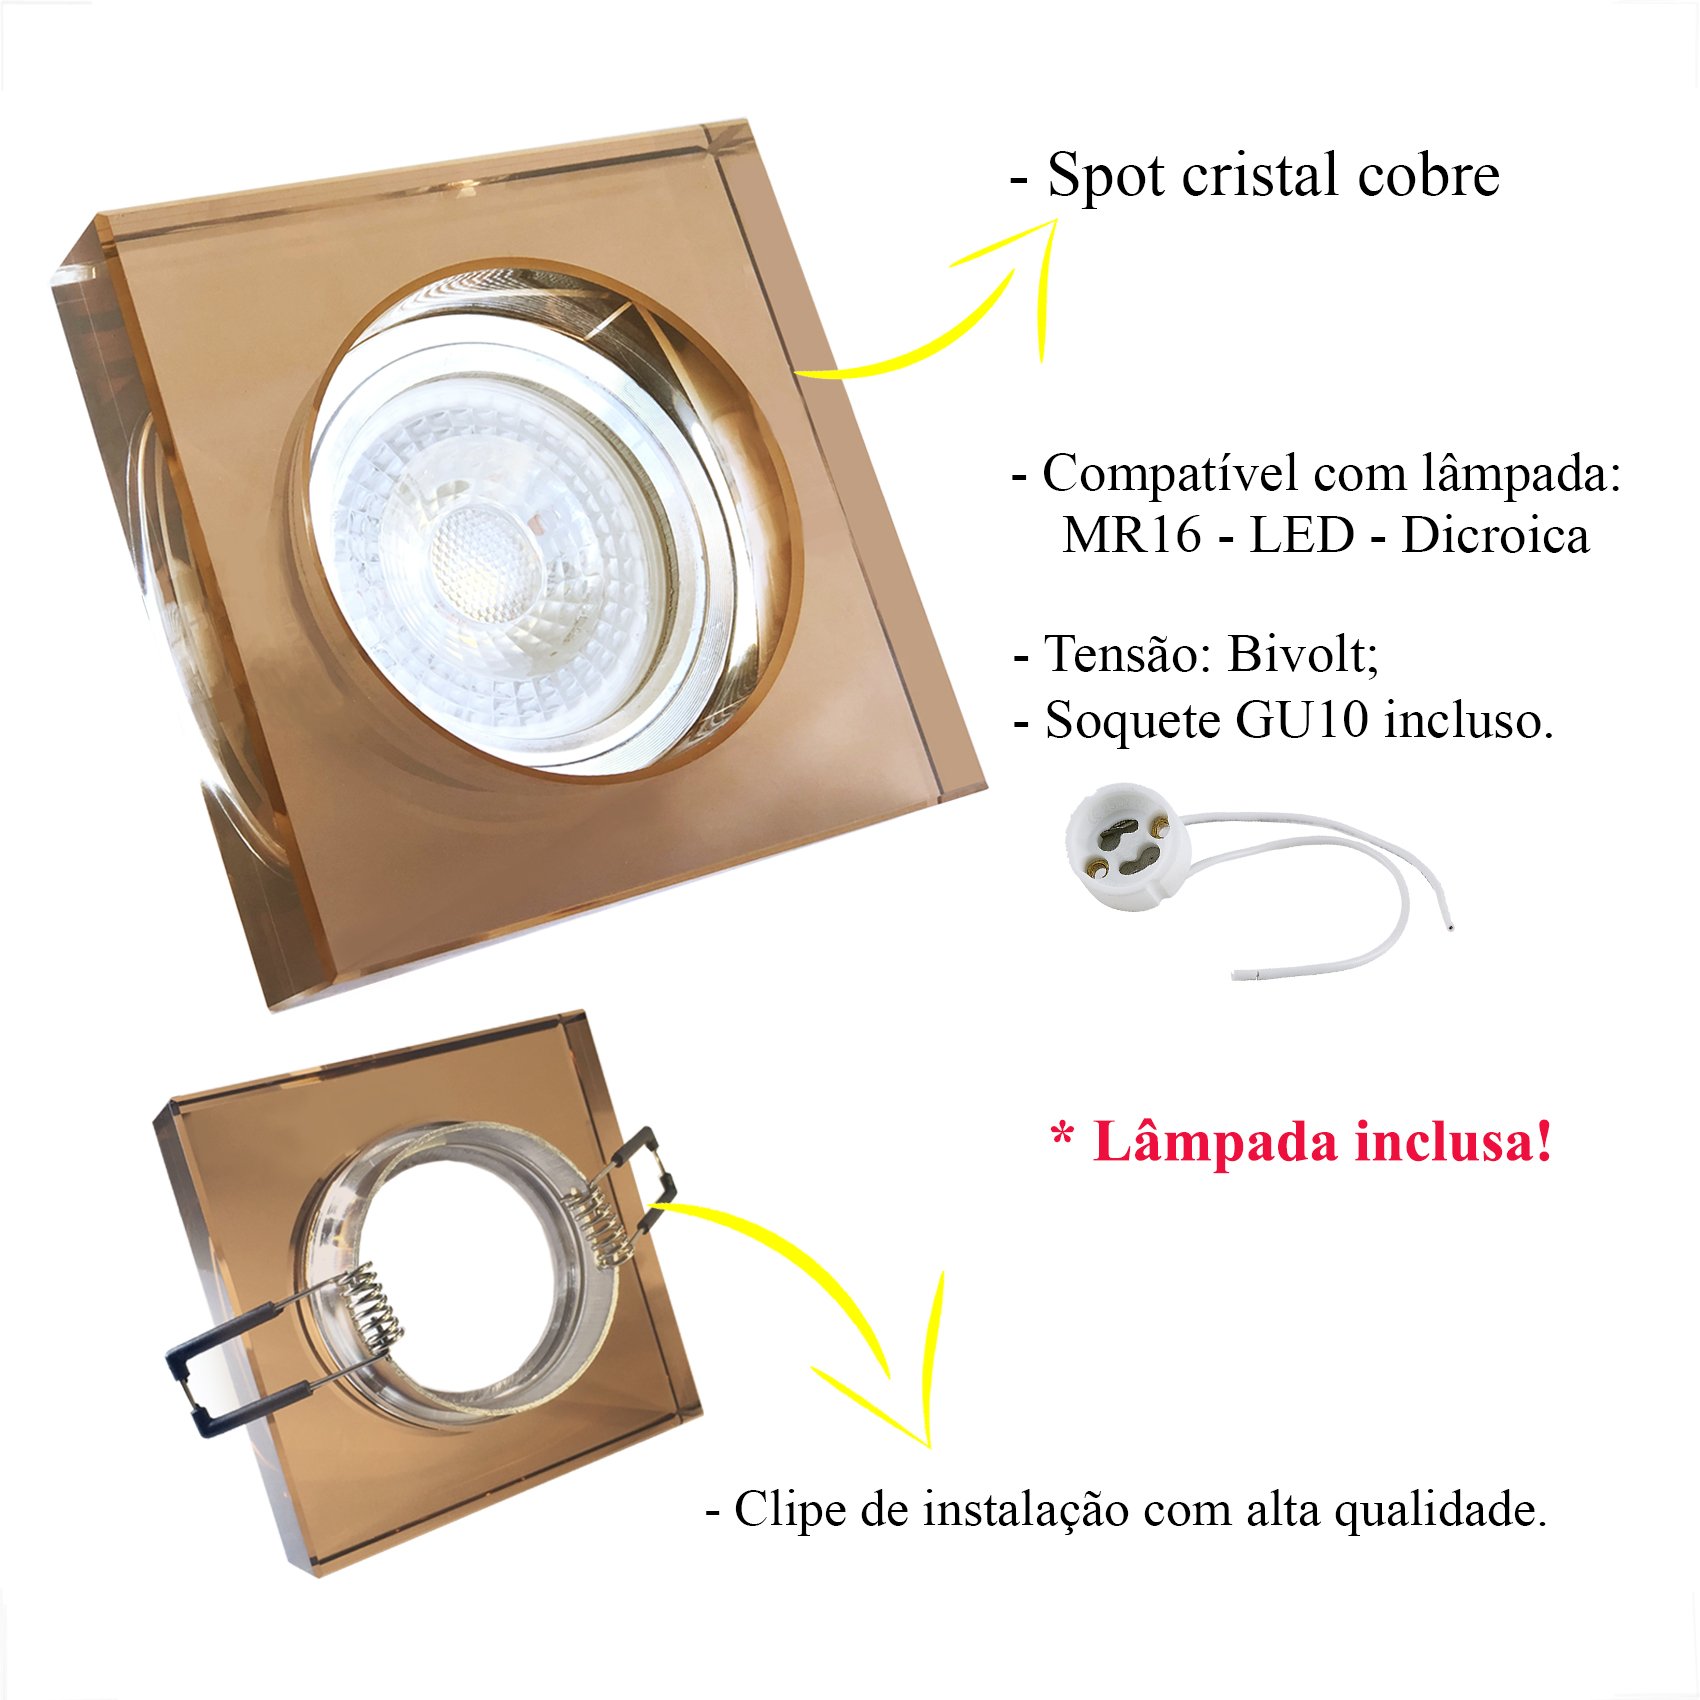 Spot Cristal Quadrado Embutir Cobreado Mr16 Dicróica Ac594 + LED Mr16 Branco Frio - 3